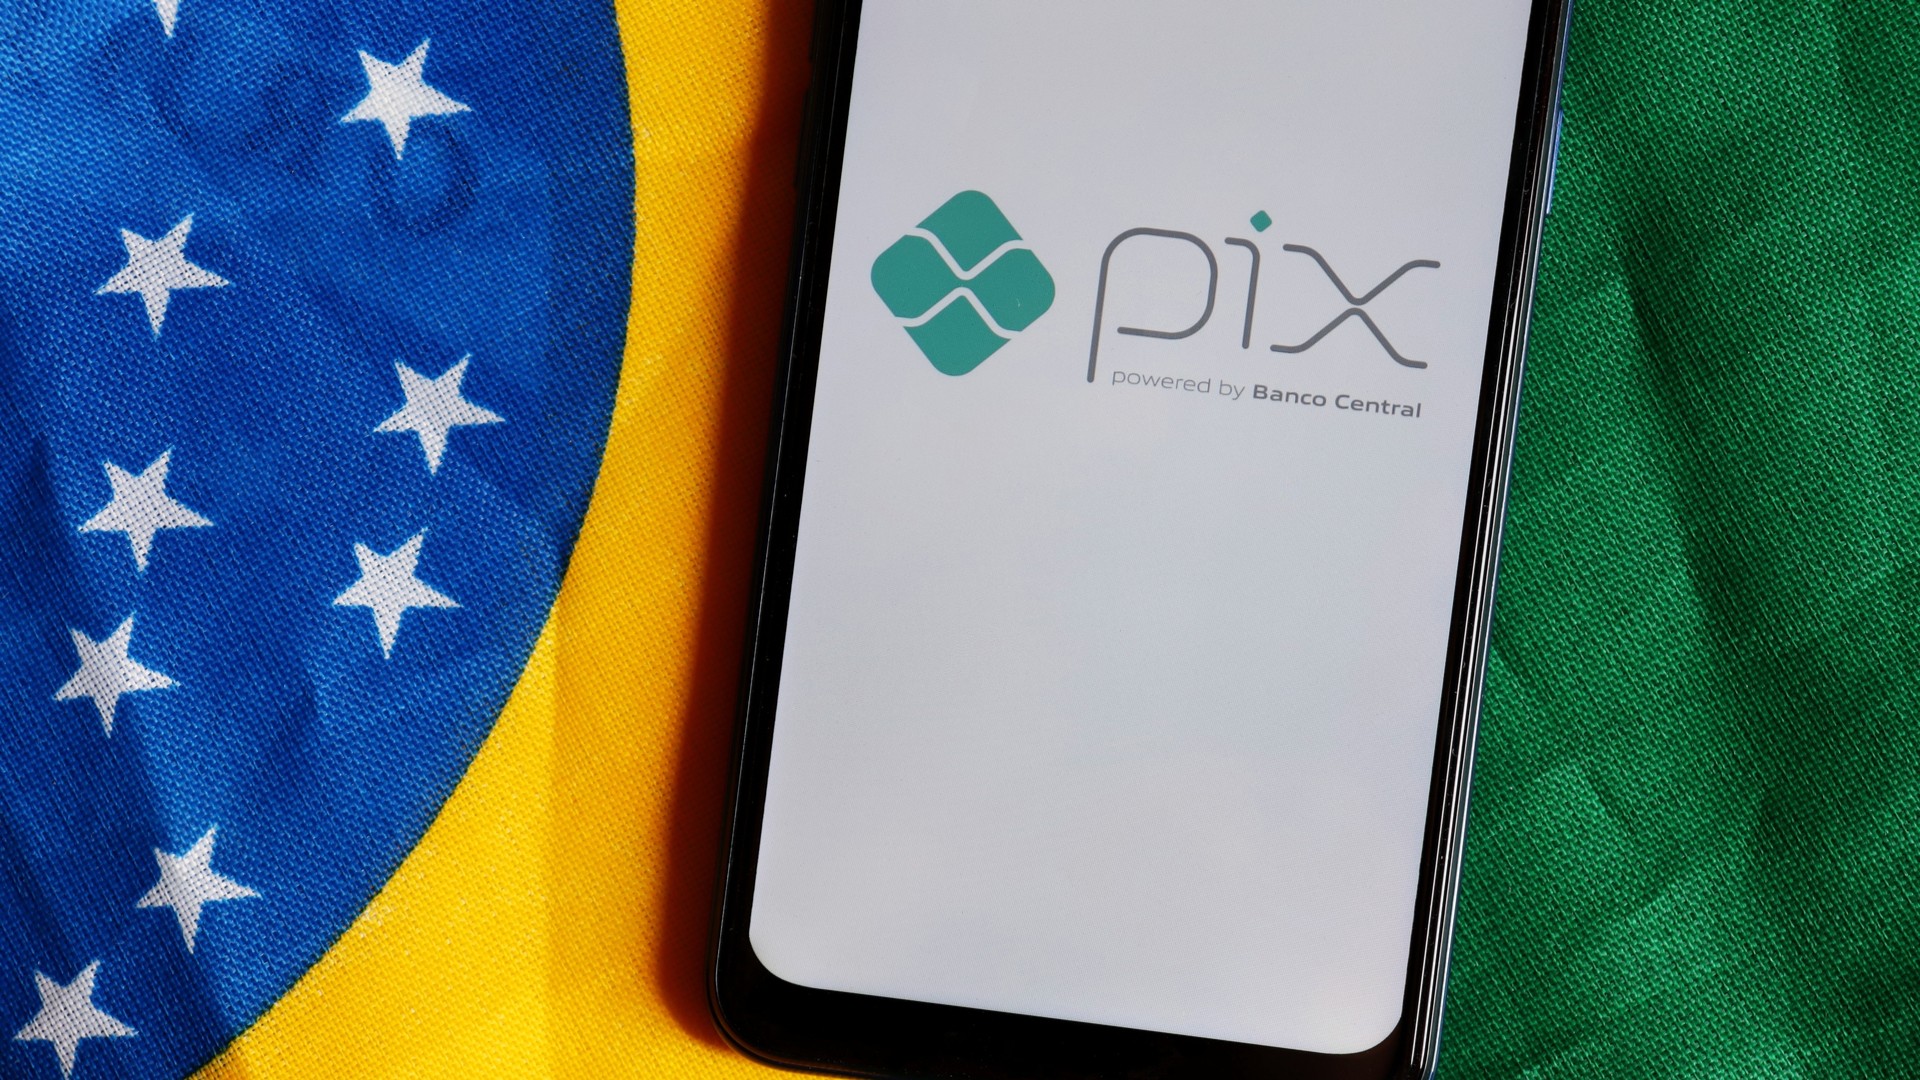 Bolsonaro diz que bancos não perdem dinheiro com PIX